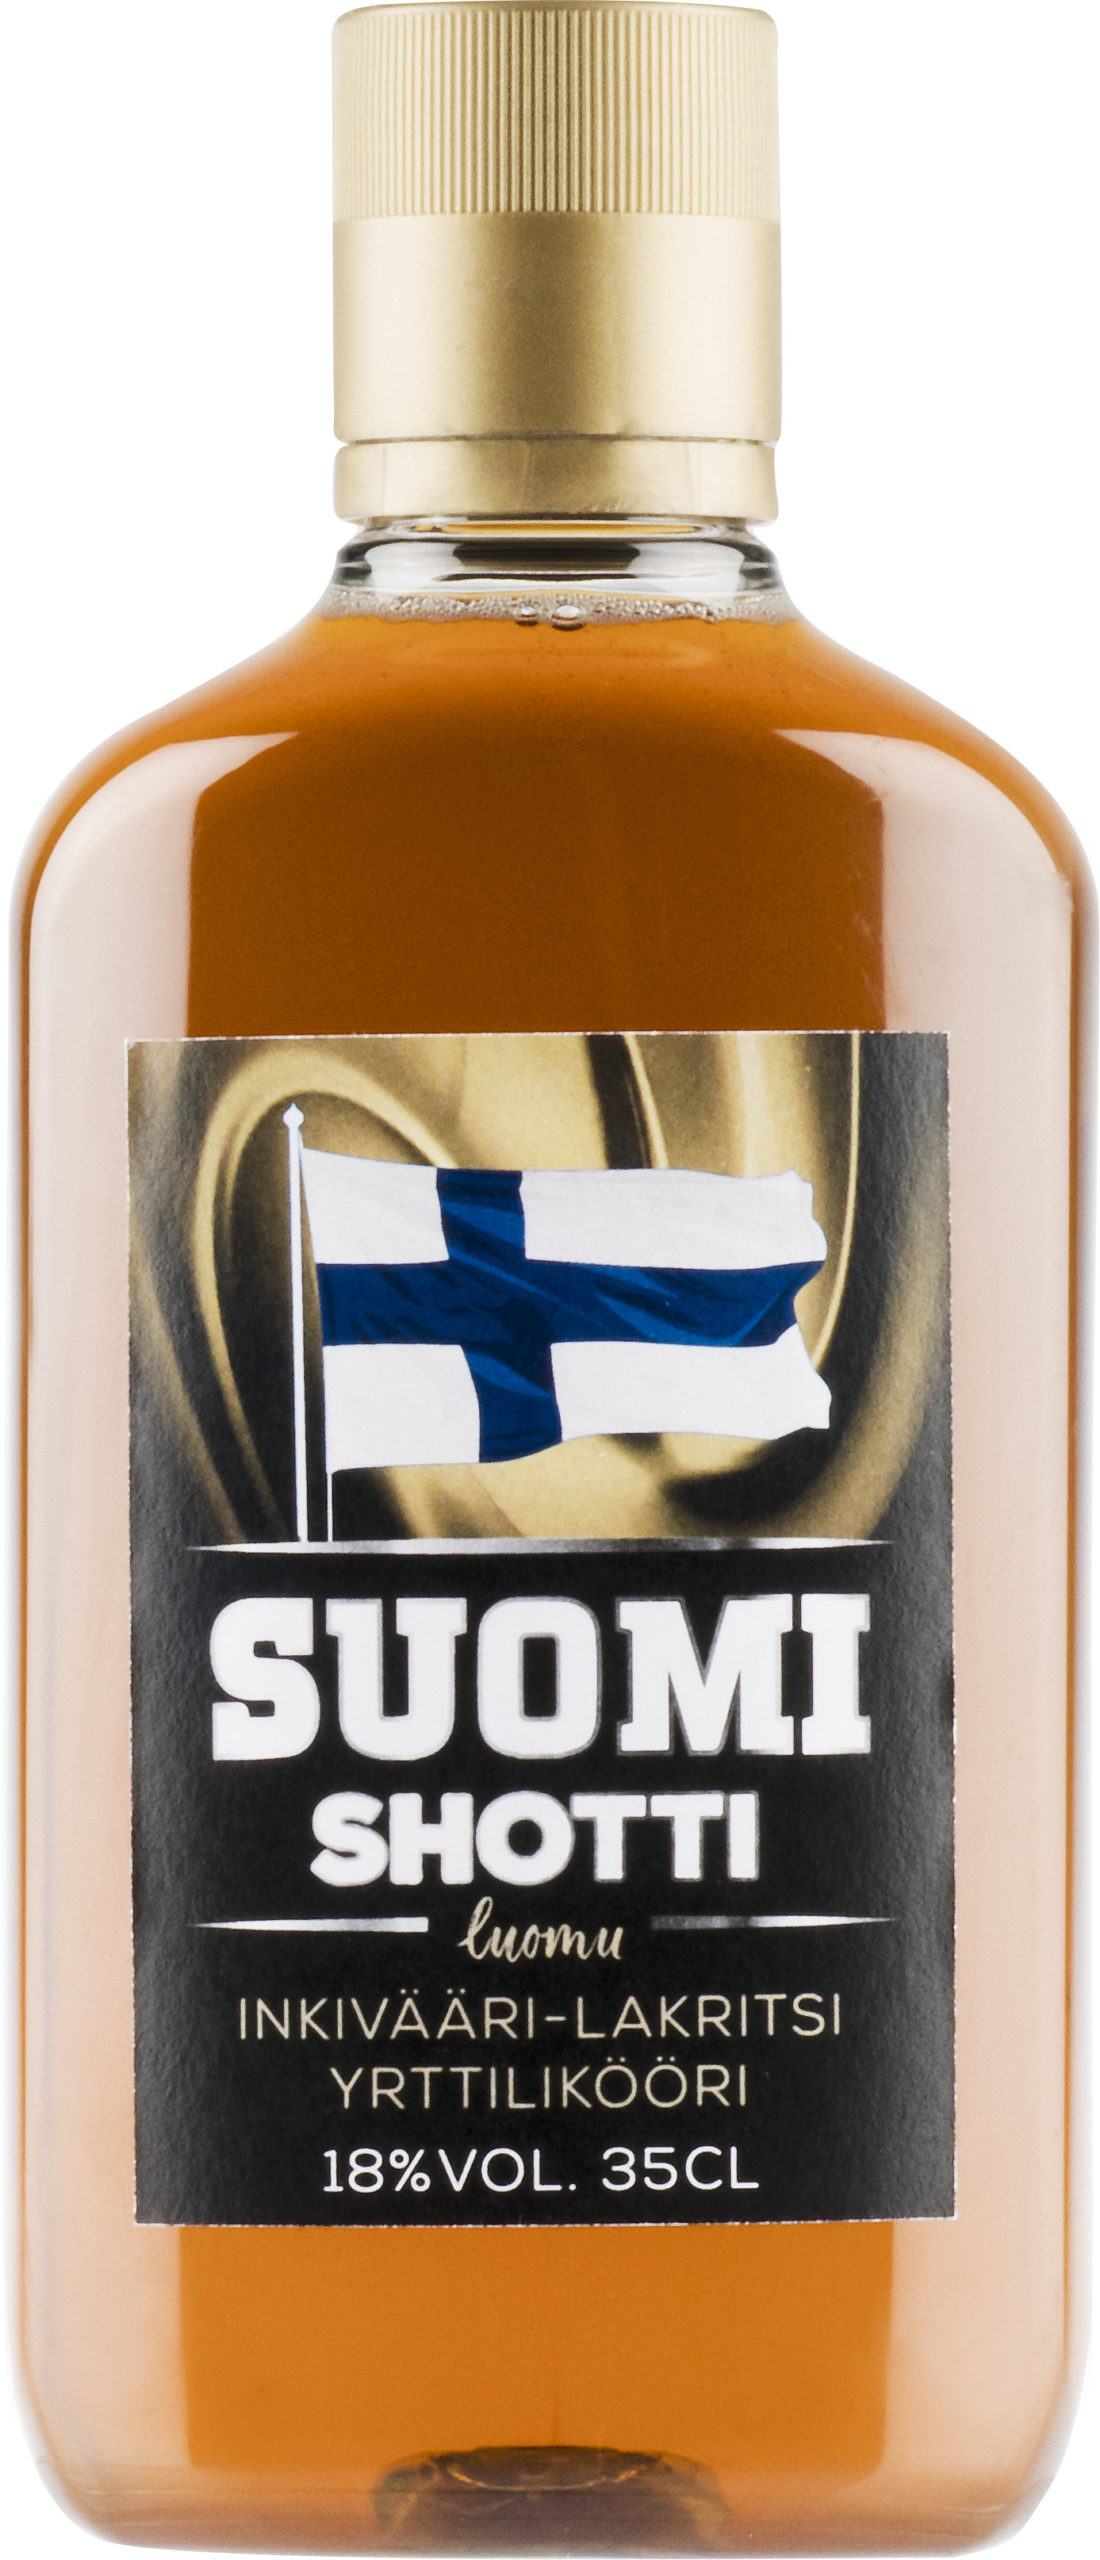 Suomi Shotti Inkivääri-Lakritsi plastic bottle